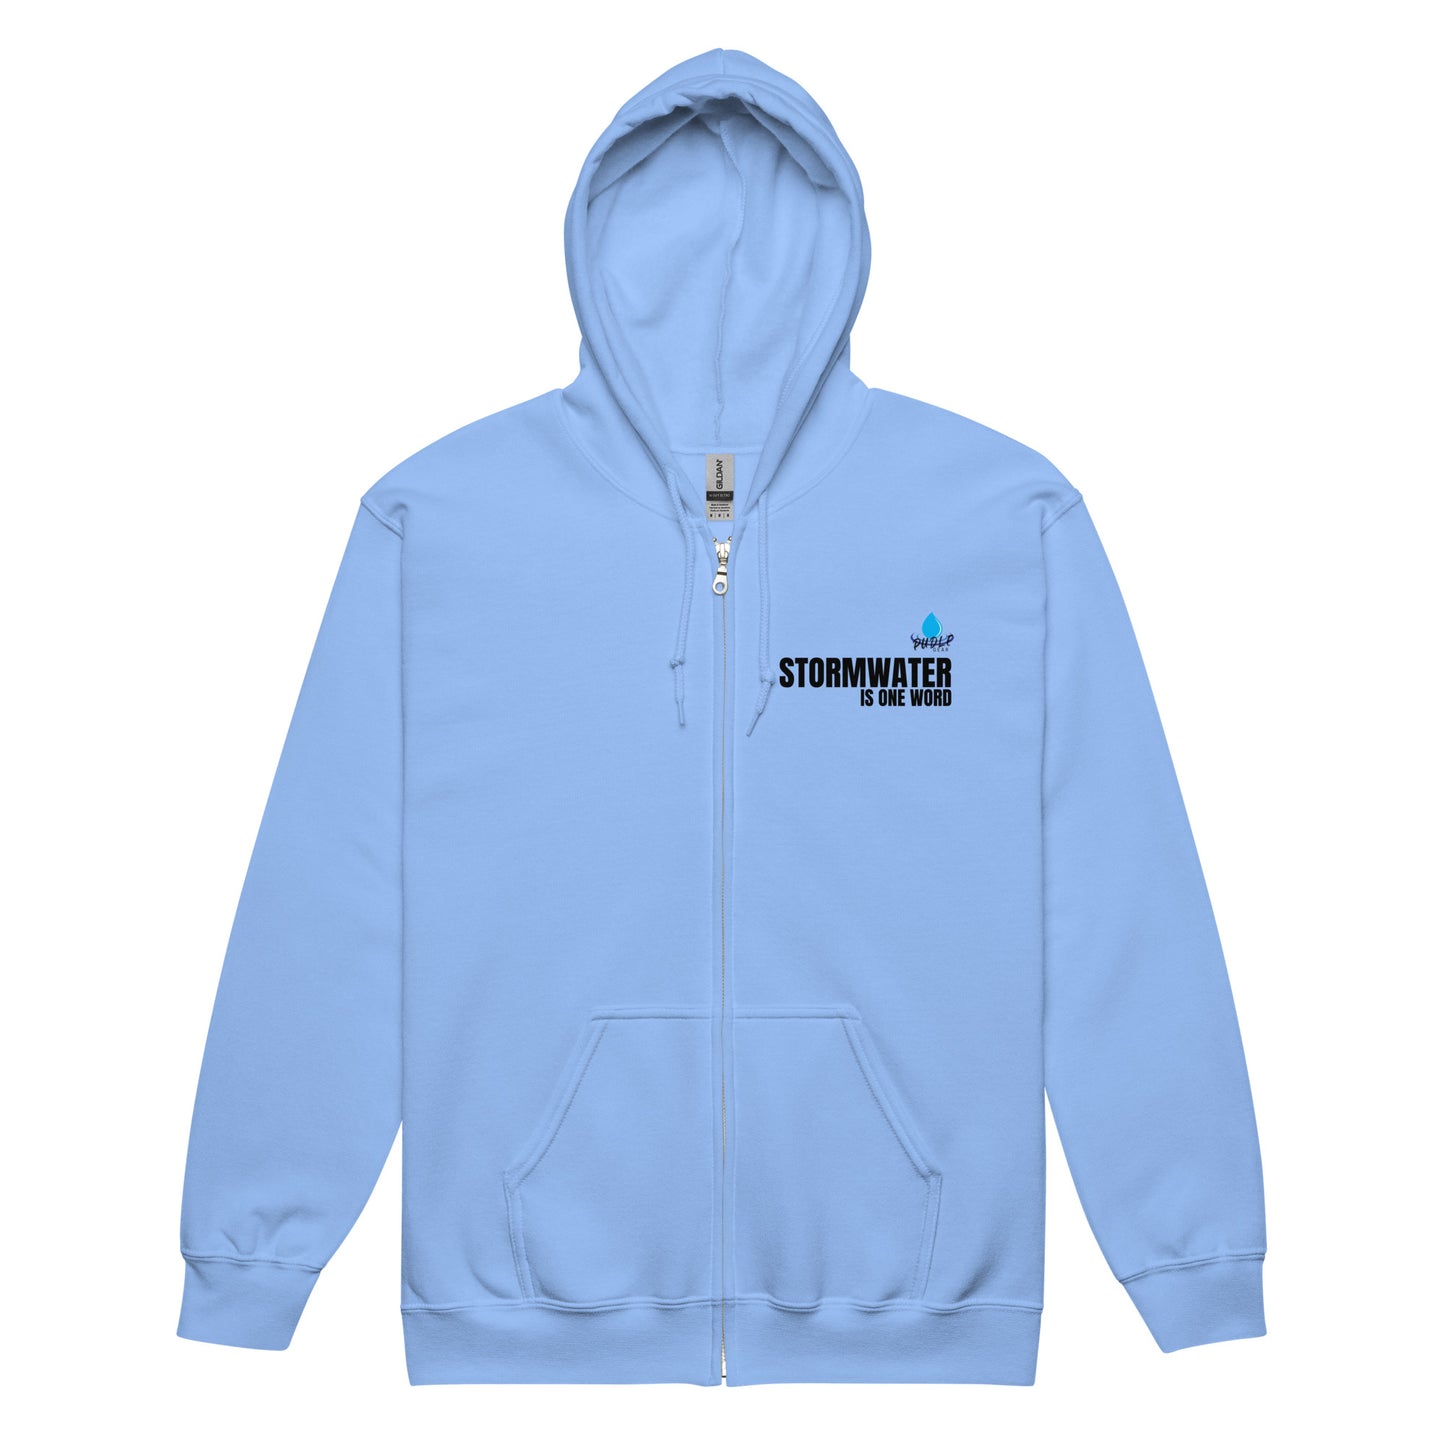 Stormwater/TurBEERdity (dark on light) Unisex heavy blend zip hoodie